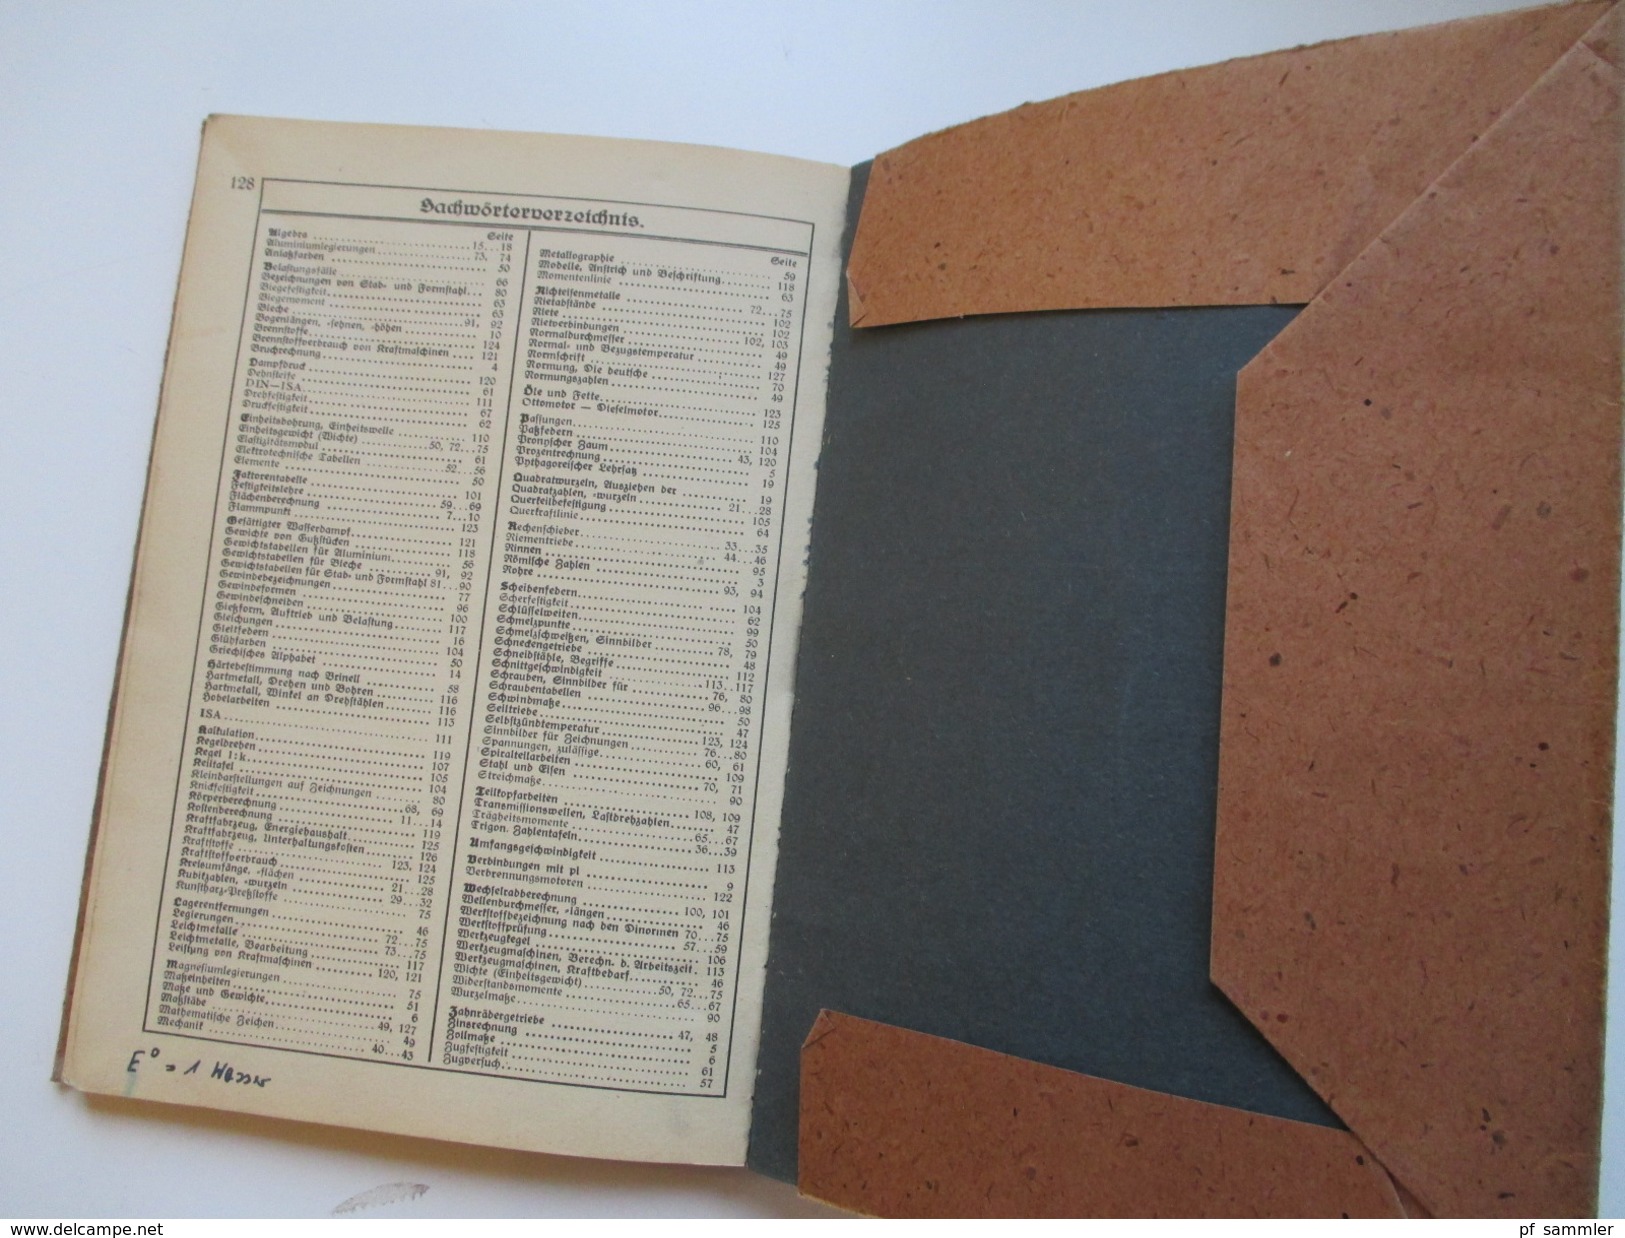 Schulbuch 1949 Formeln und Tabellen für das Metallgewerbe. Gebrüder Jänecke Buchverlag Hannover. Viele Abbildungen!!